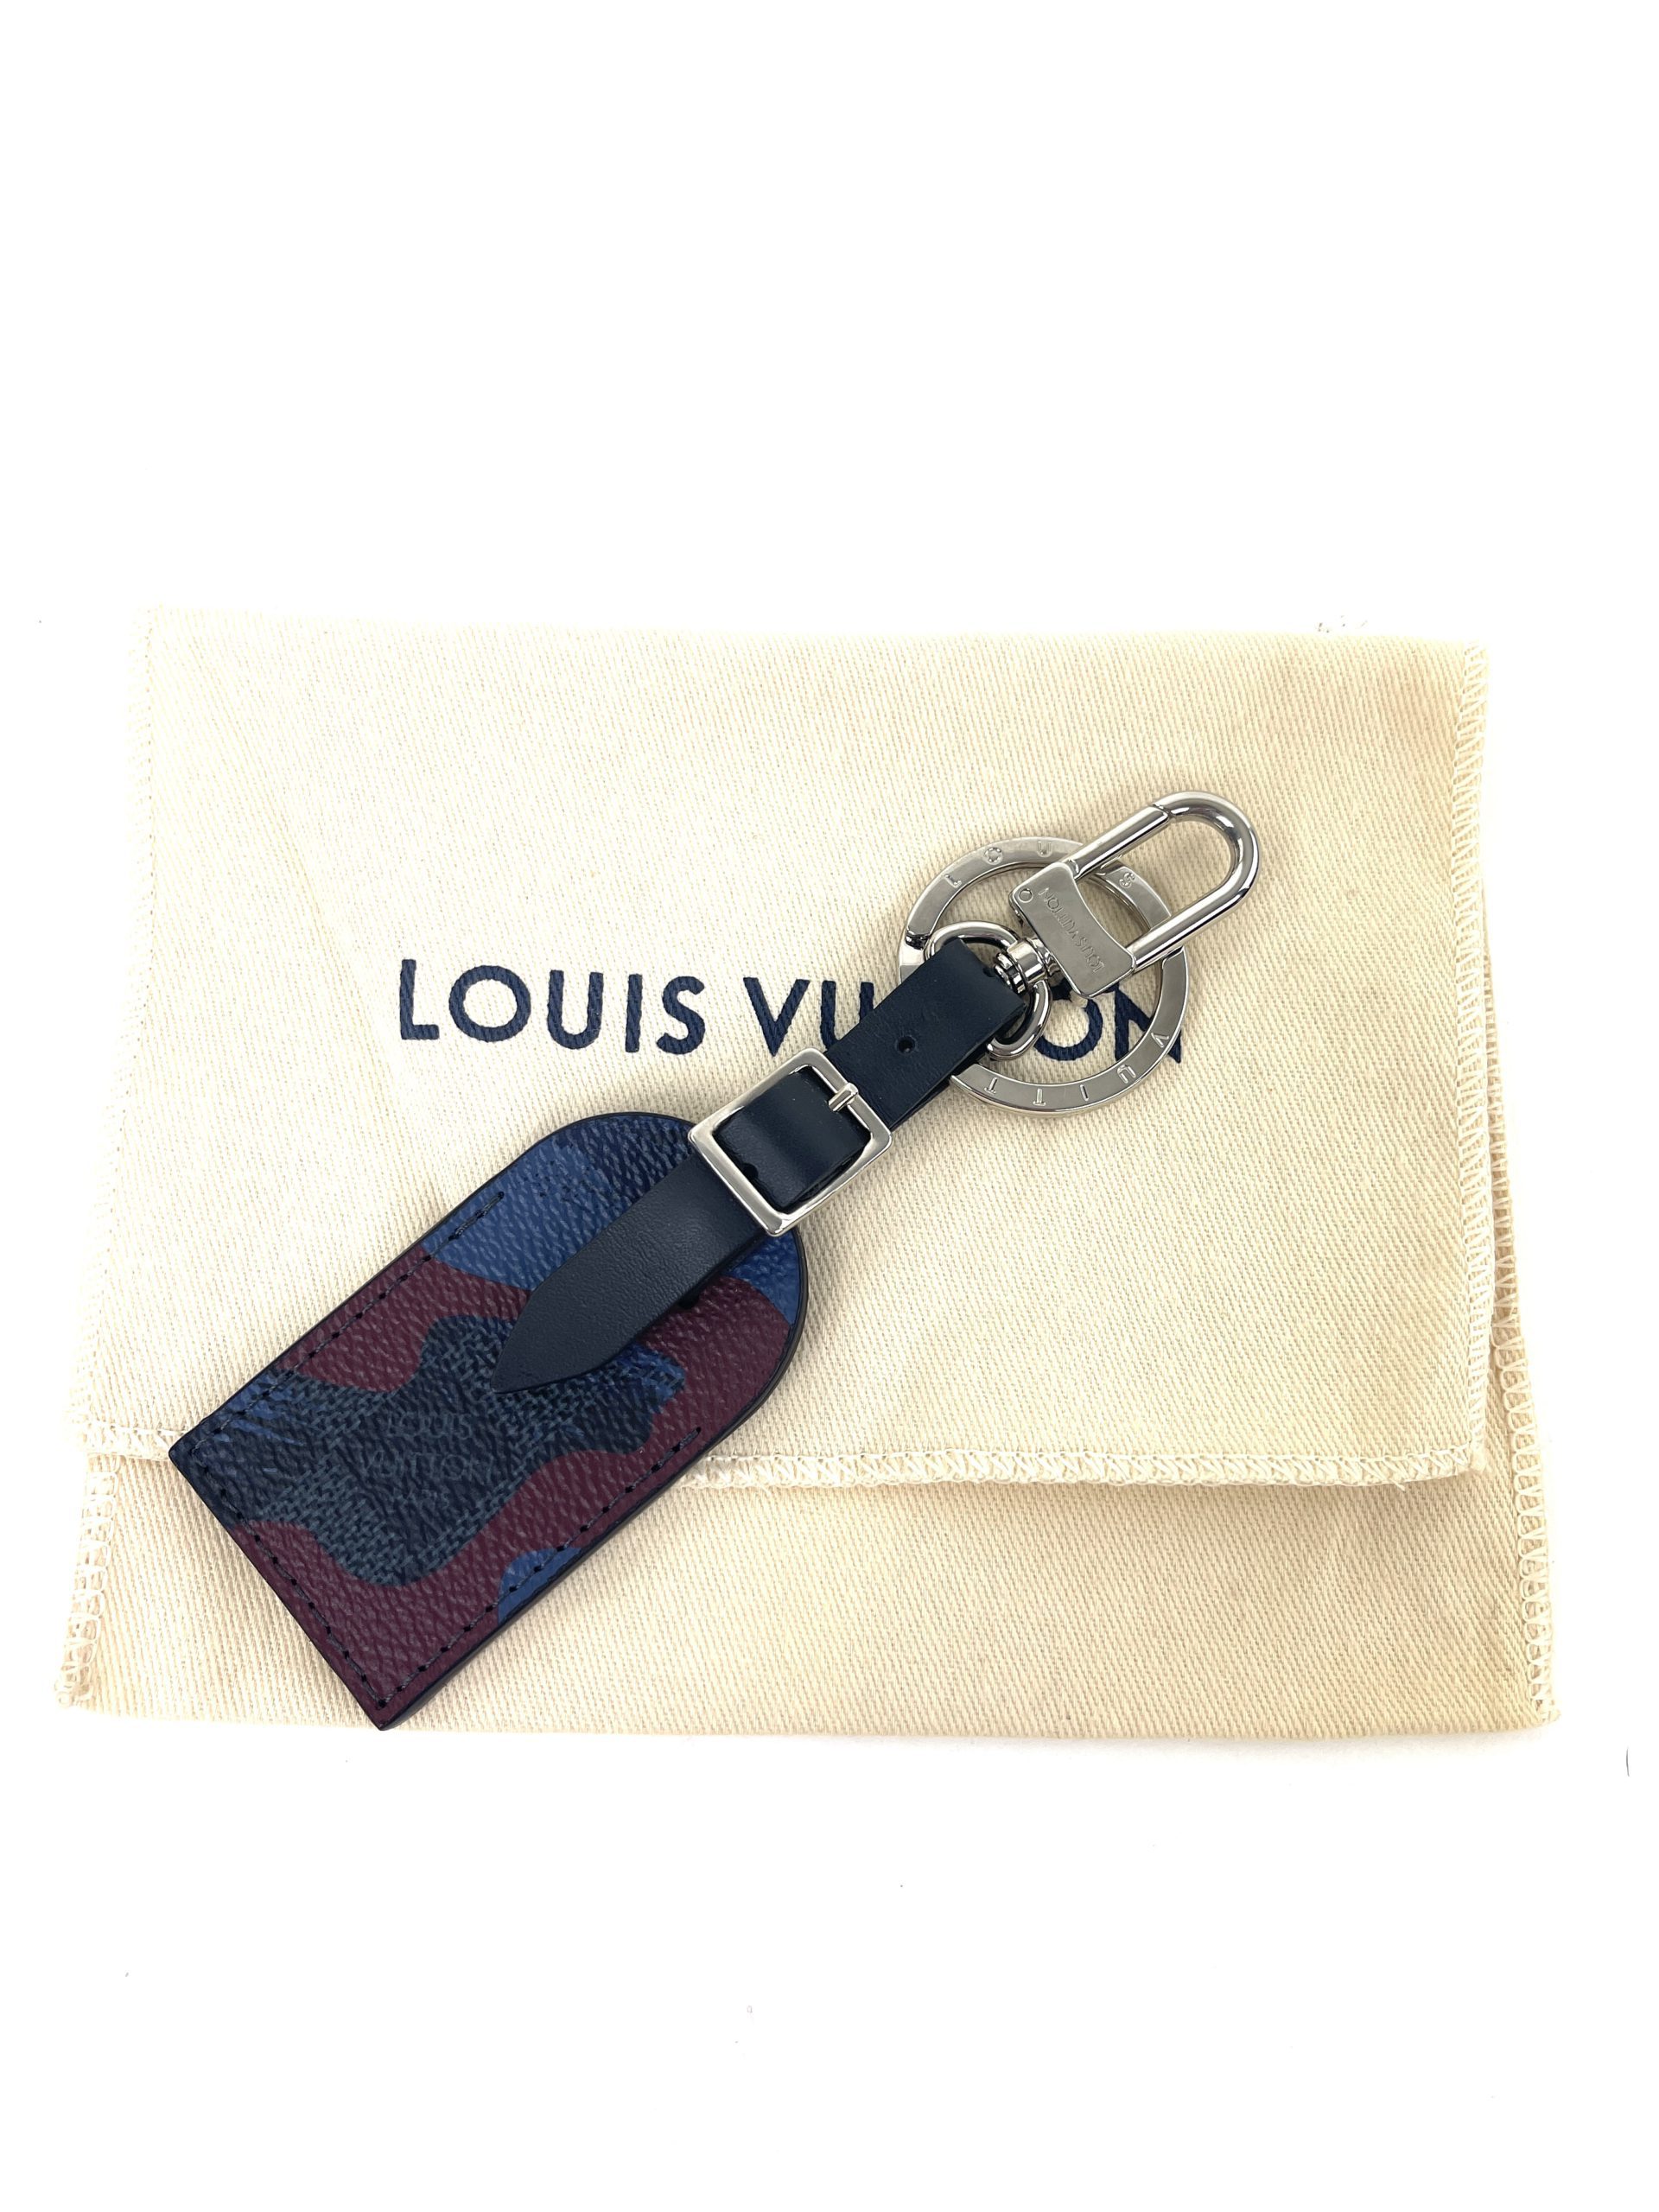 LOUIS VUITTON Monogram Luggage Tag